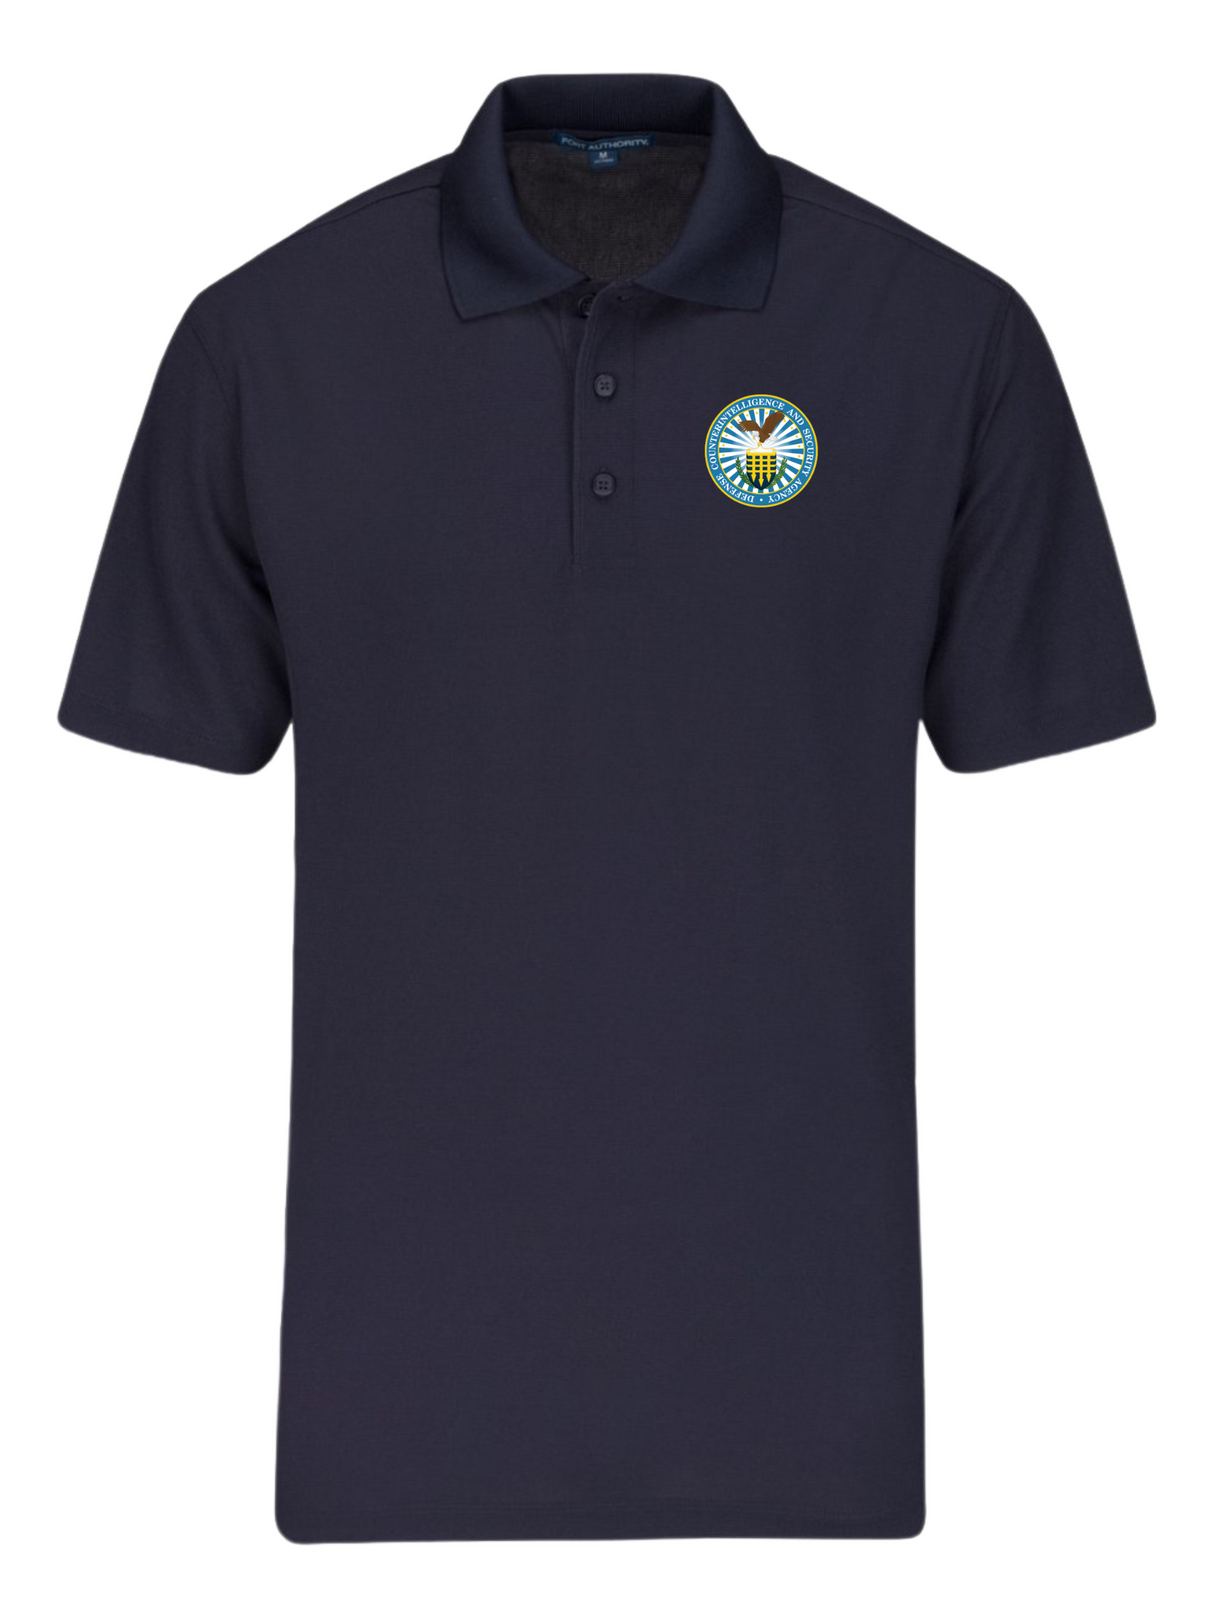 DCSA Polo Shirt - Men's Short Sleeve